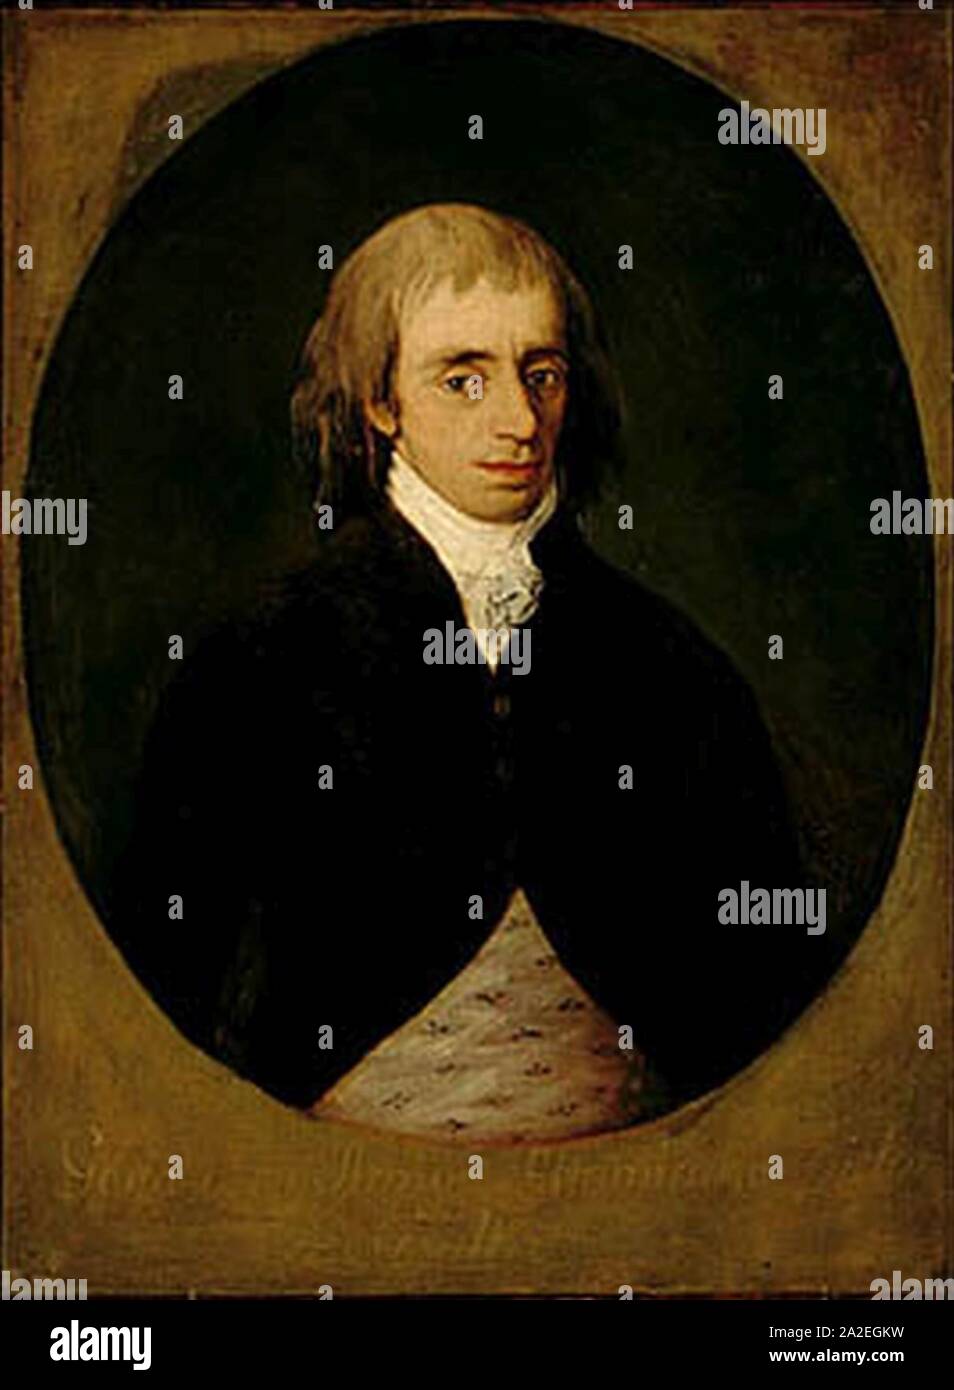 El juez Altamirano por Goya. Stock Photo